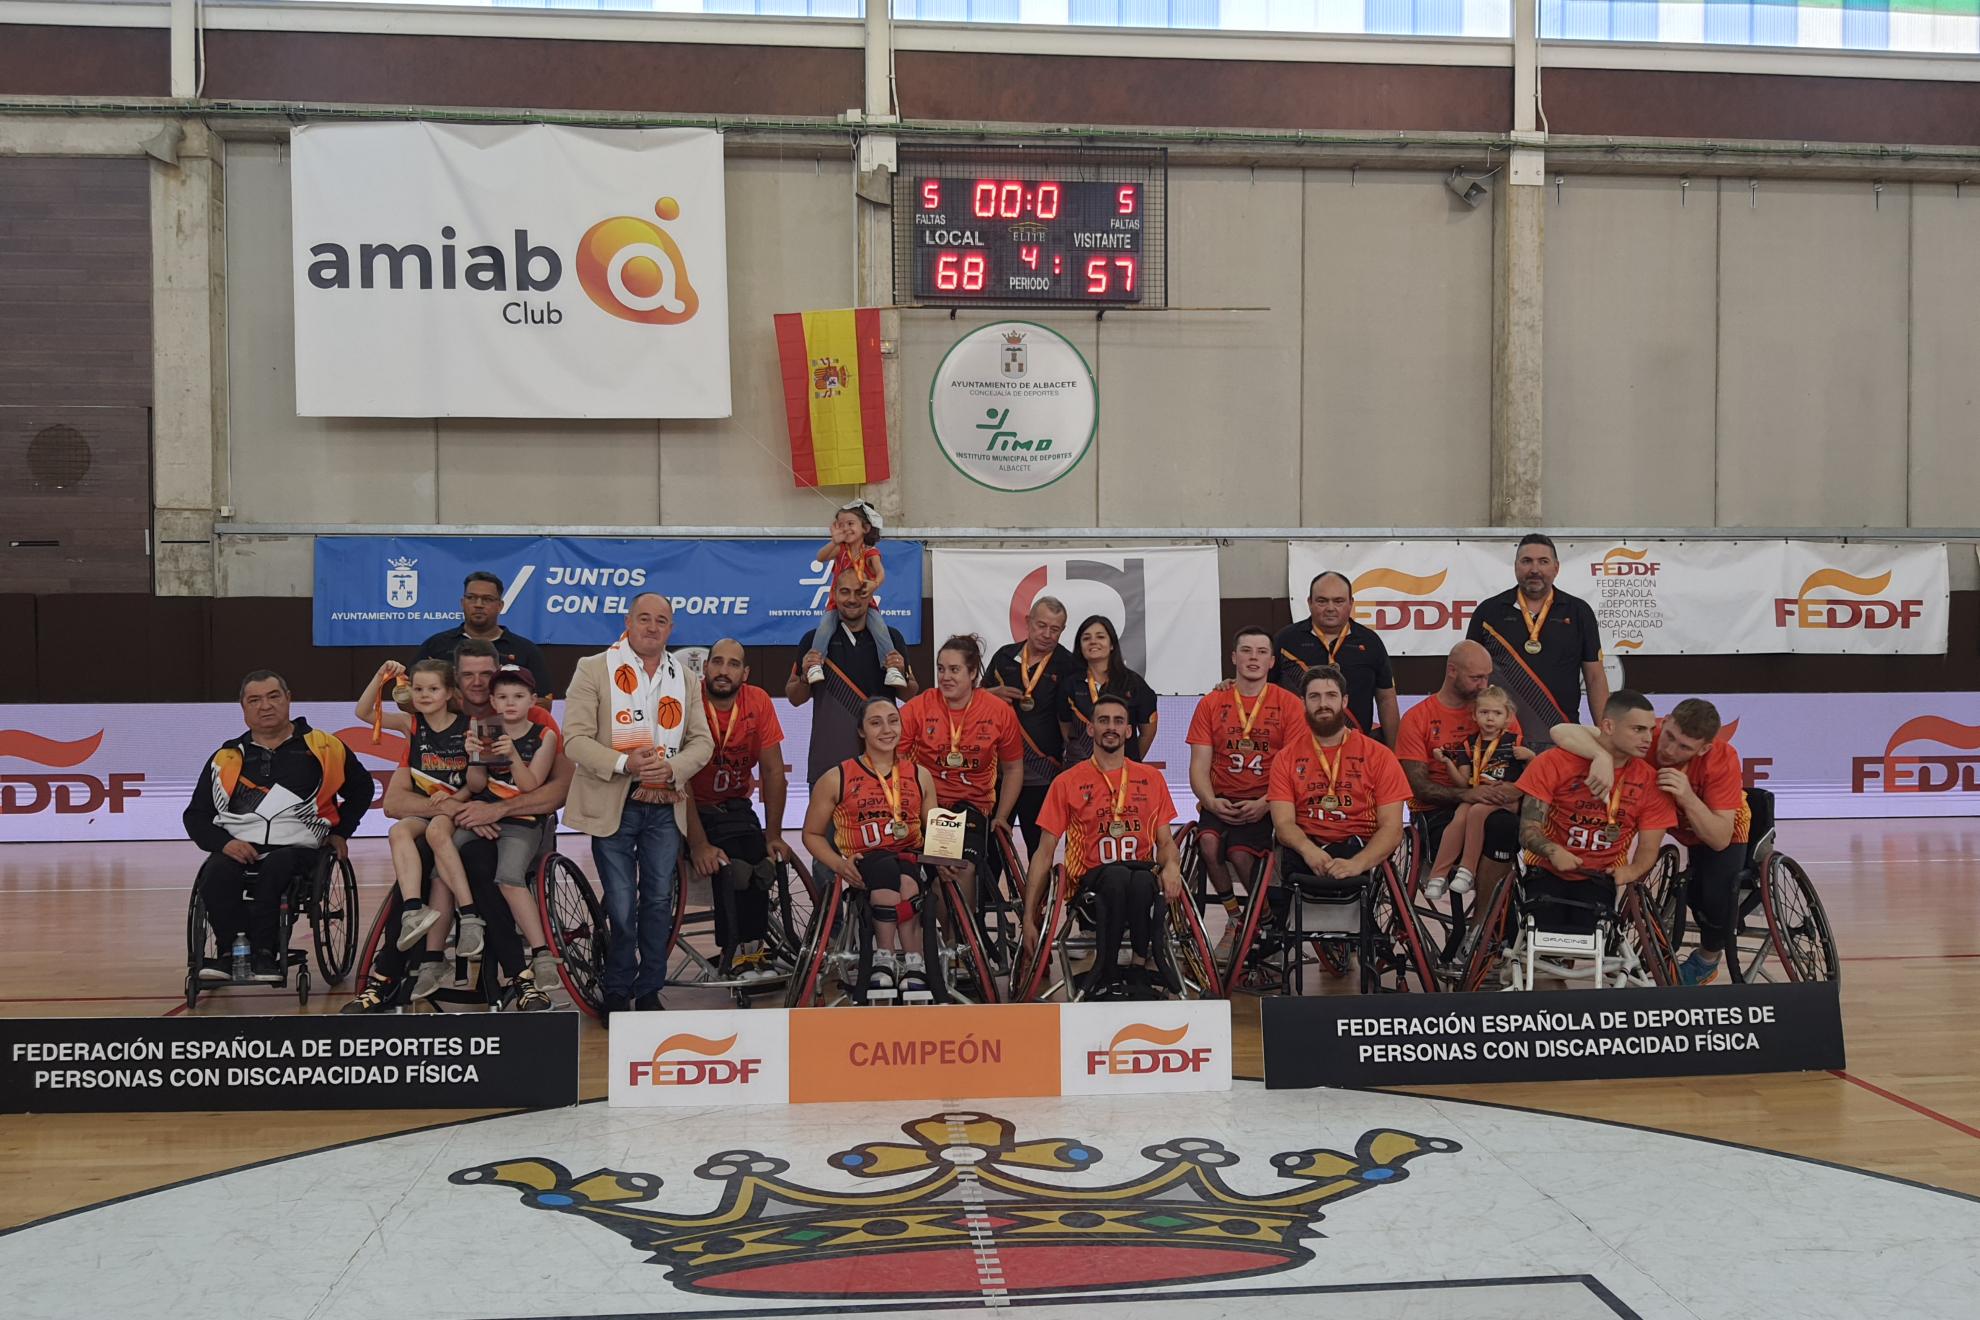 El Amiab Albacete celebra la Supercopa / FEDDF